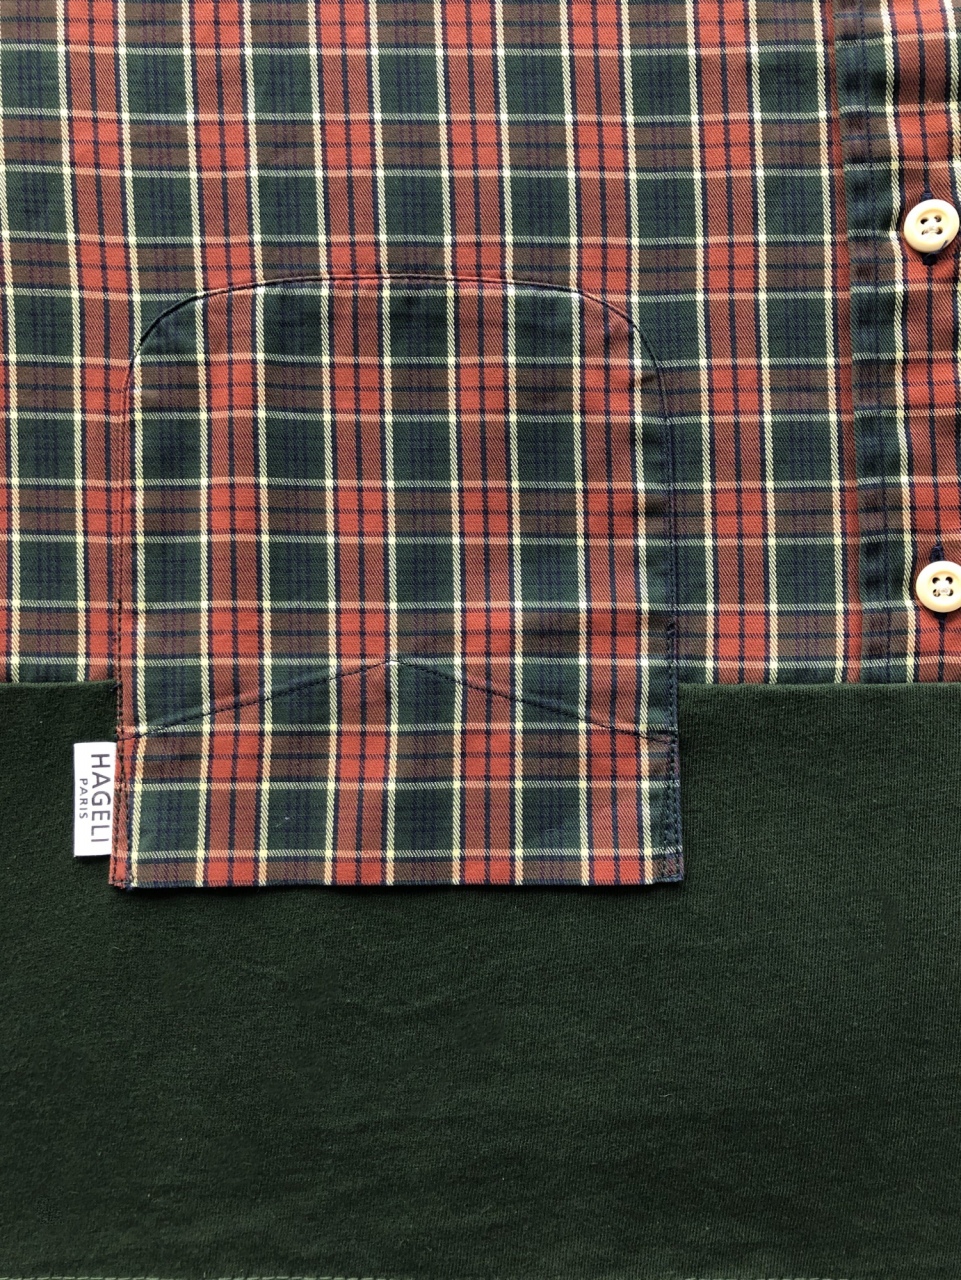 T-shirt en coton de chemise et T-shirt vintage, pièce unique / 2018